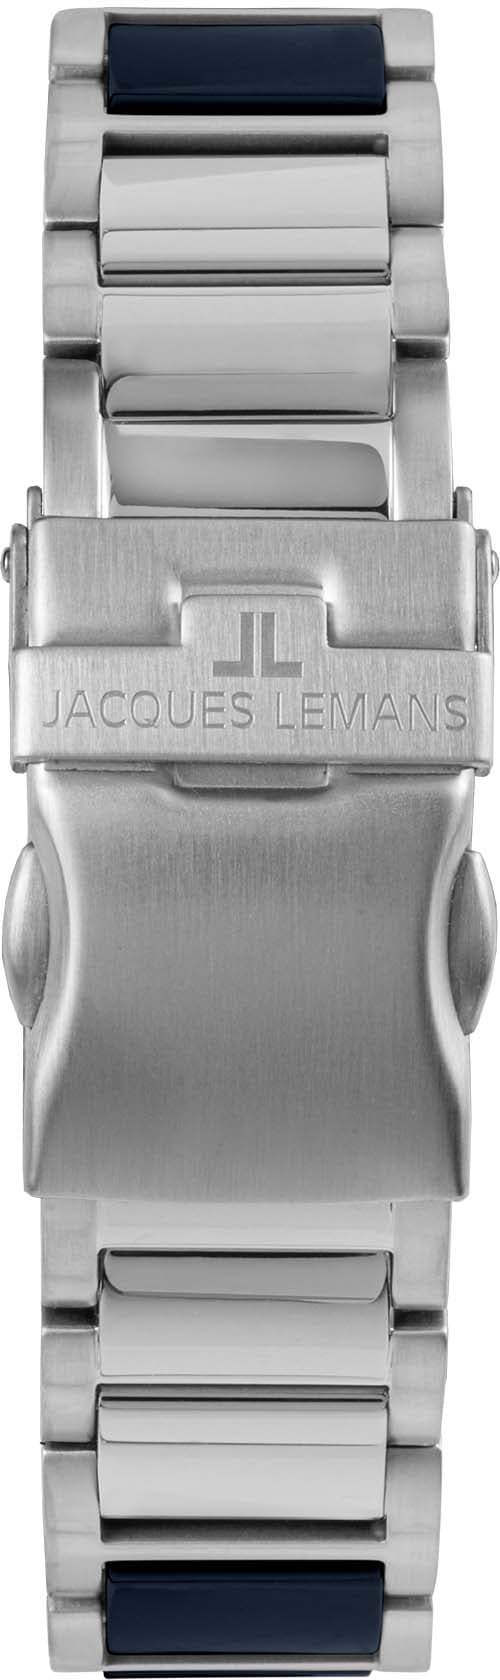 Jacques Lemans Keramikuhr »Liverpool, 42-10B«, Quarzuhr, Armbanduhr, Herrenuhr, Datum, Leuchtzeiger